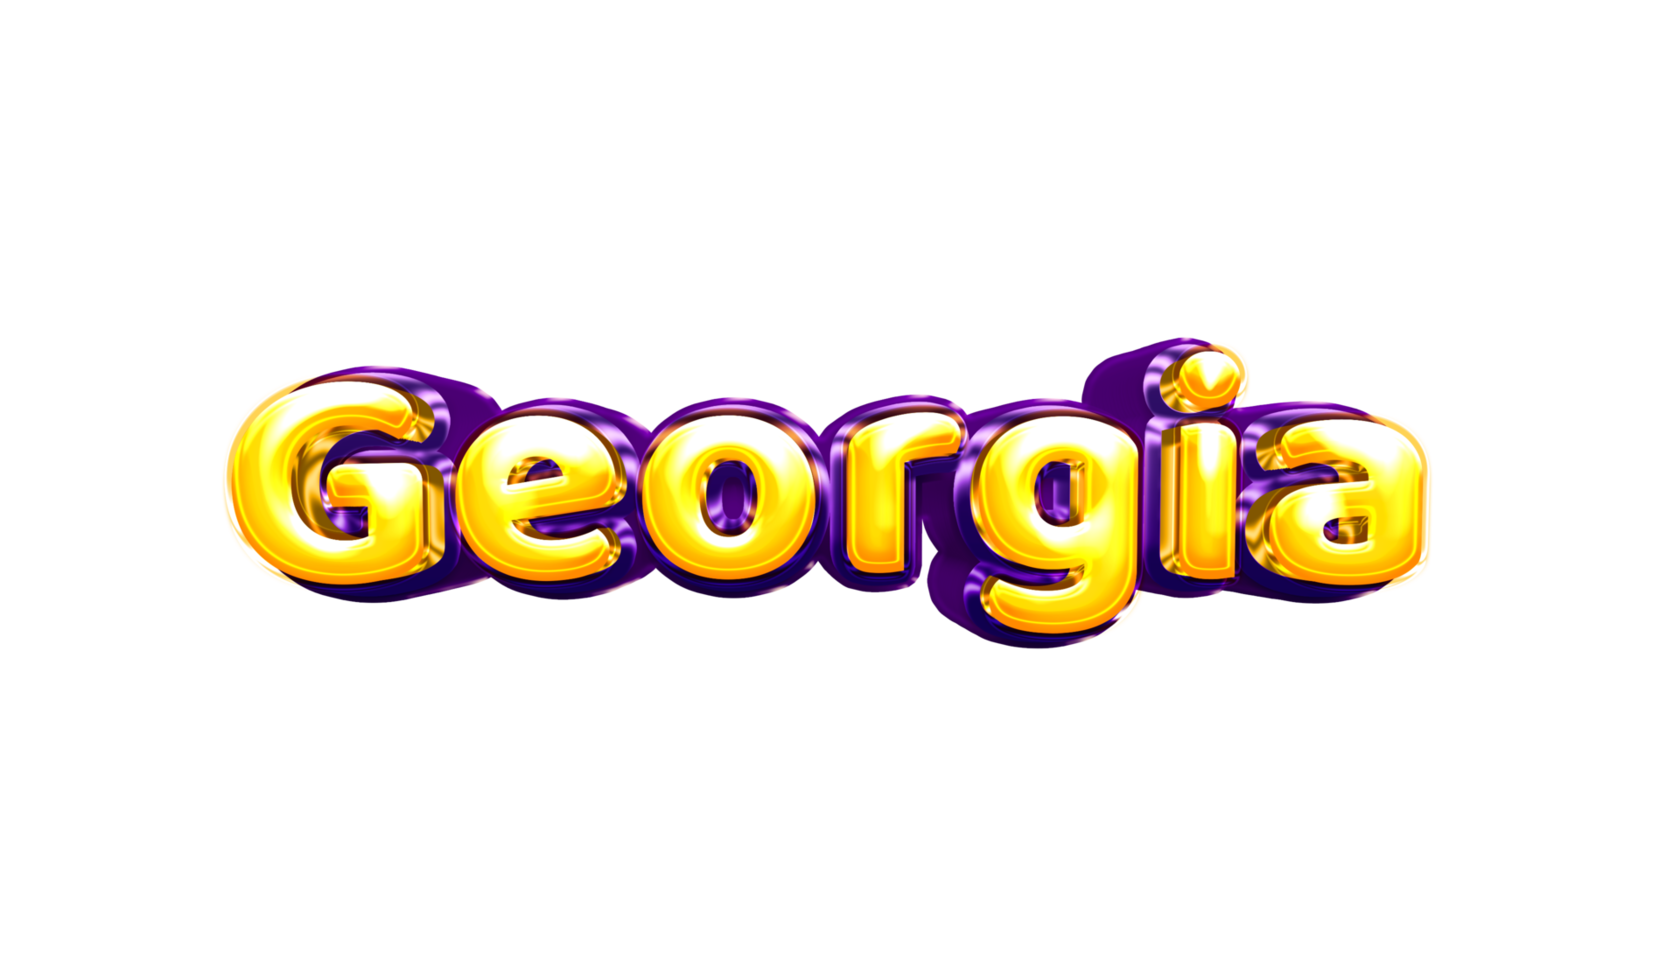 adesivo de nome de meninas colorido balão de festa aniversário hélio ar brilhante amarelo roxo recorte georgia georgia png